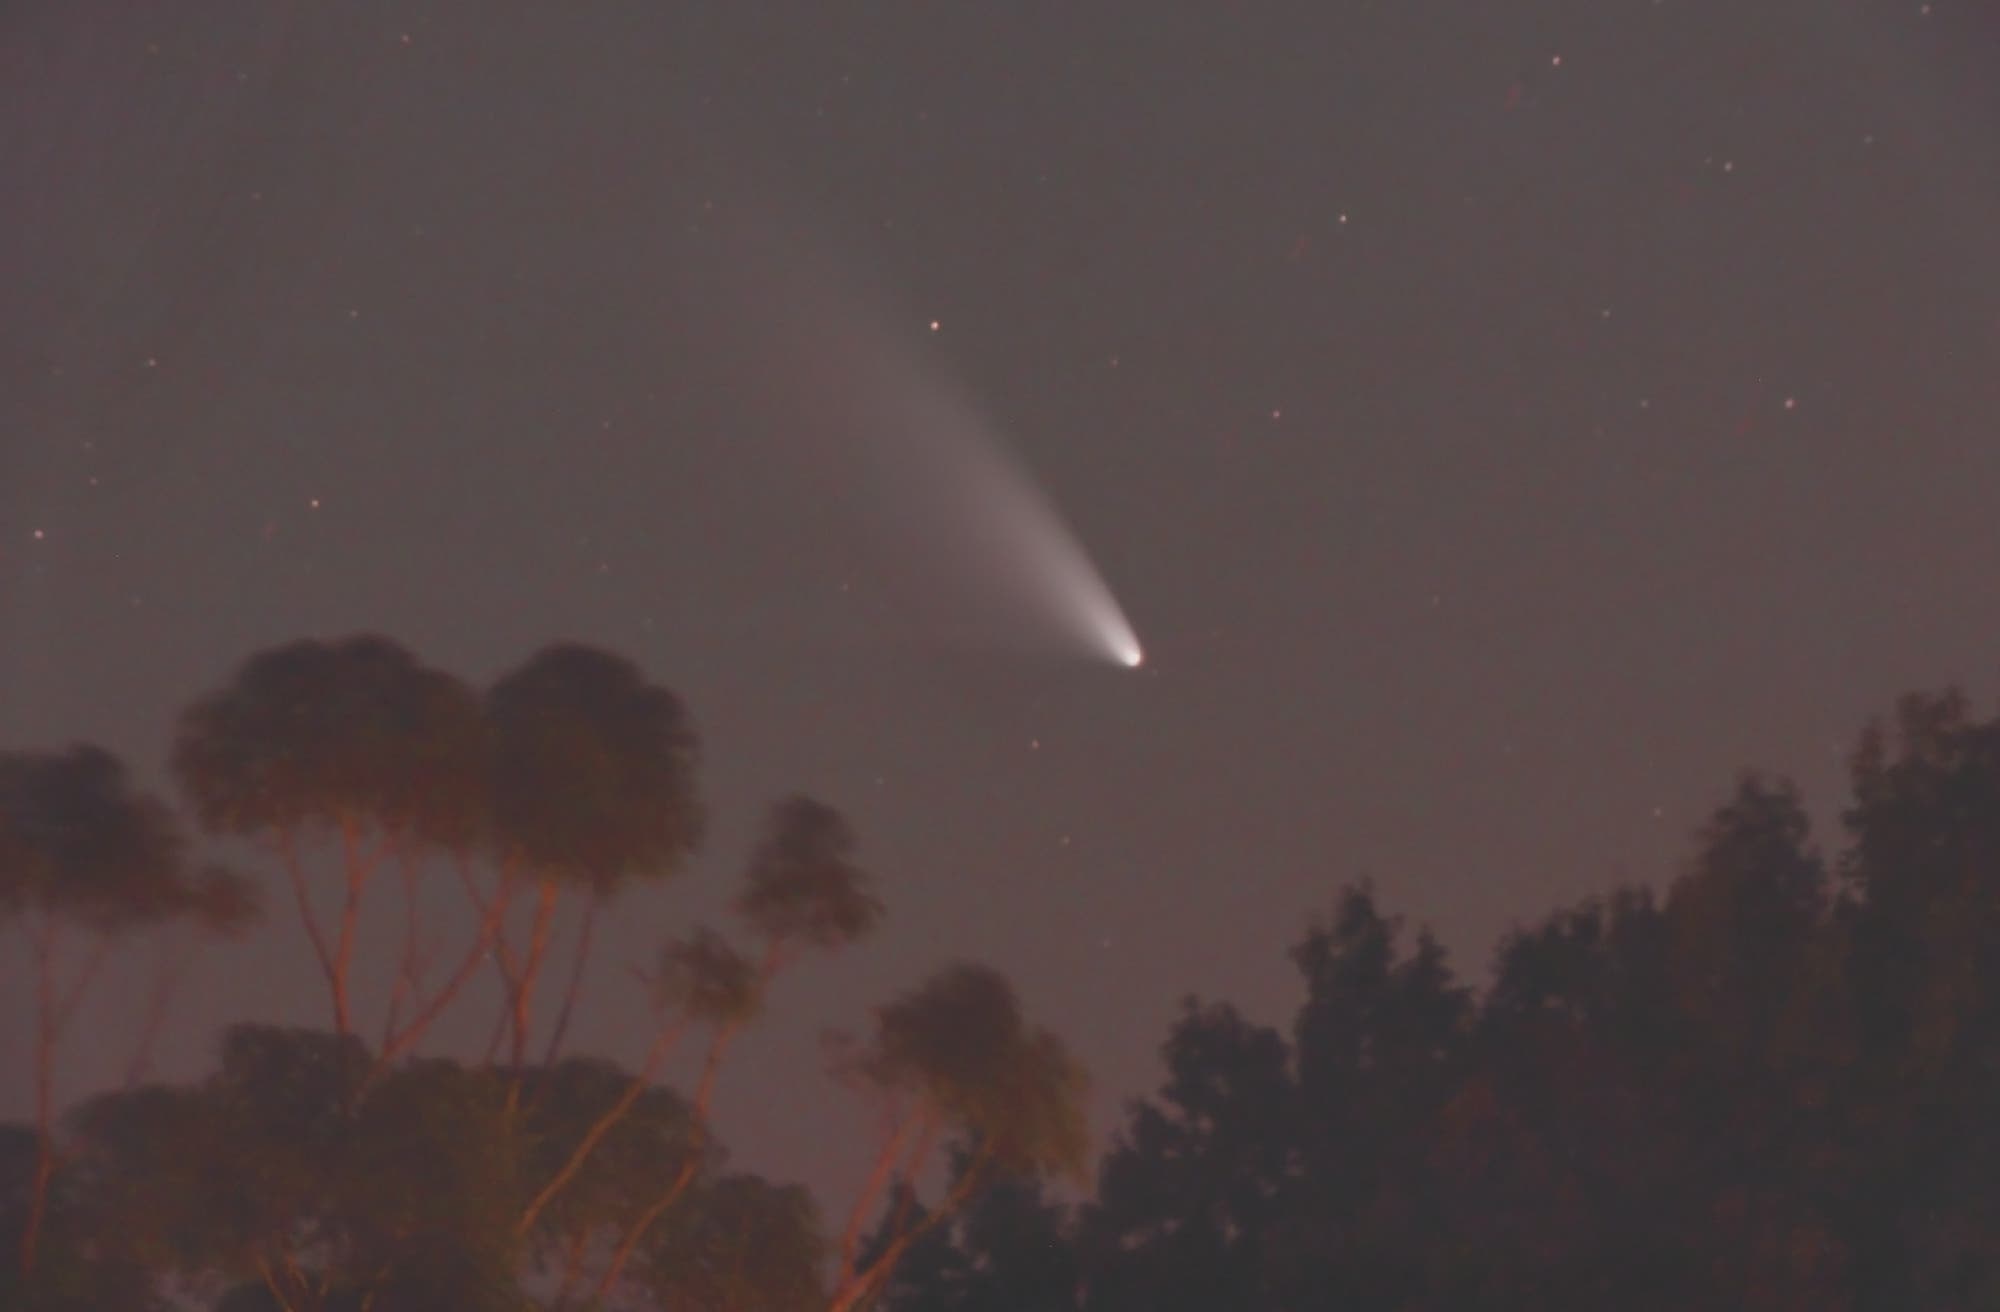 Komet C/2011 L4 (PANSTARRS) am 2. März 2013